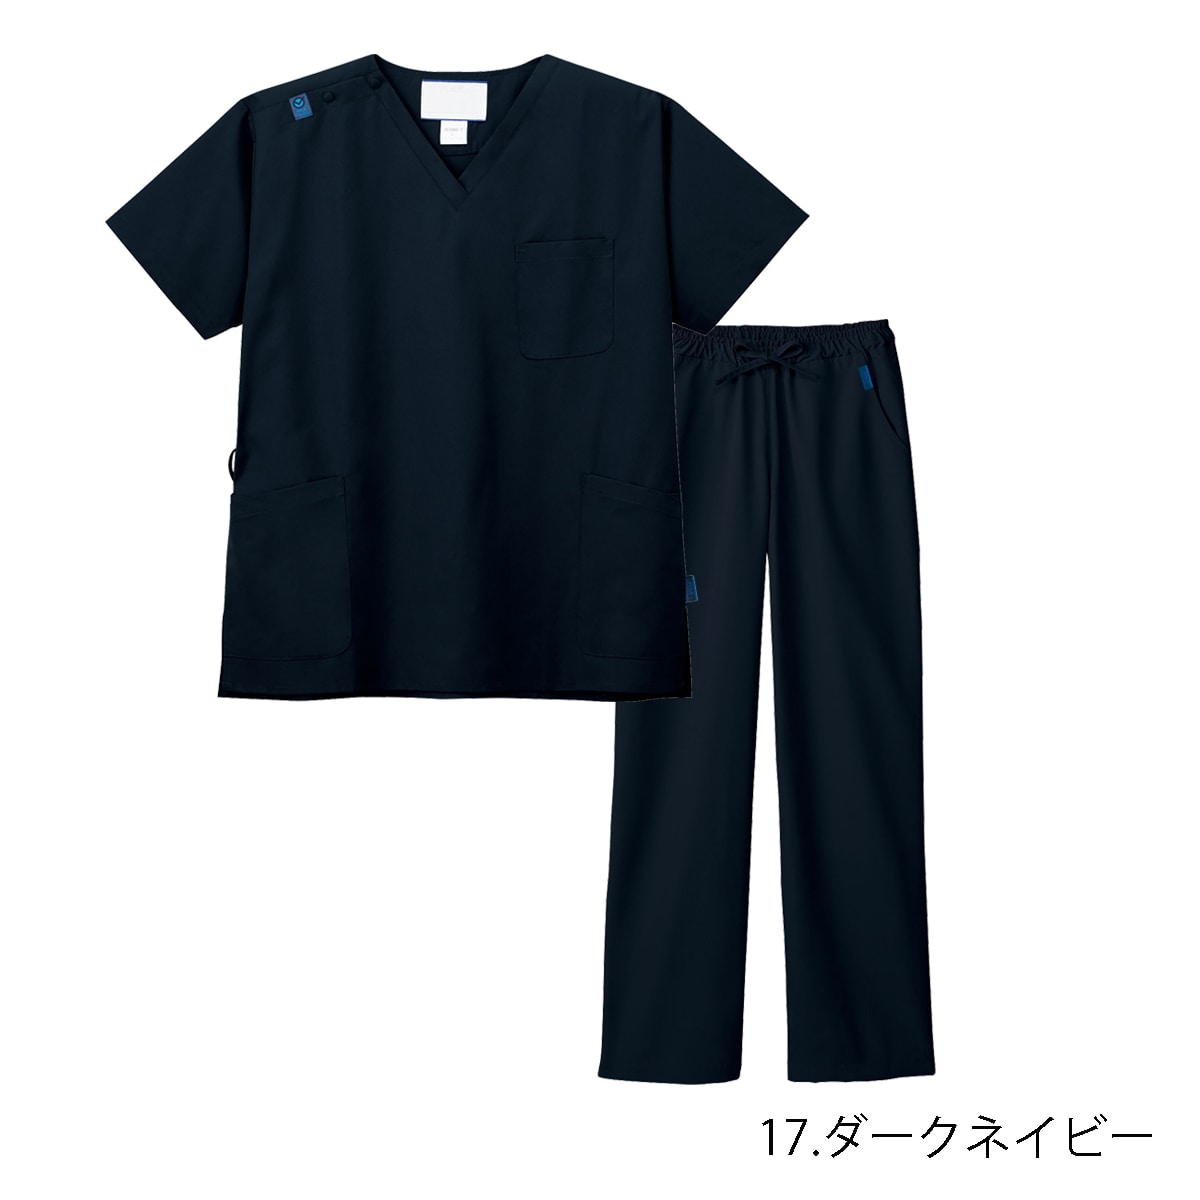 240円 特価品コーナー☆ ＴＲＵＳＣＯ レインスーツ ３Ｌサイズ ネイビー TRW553L